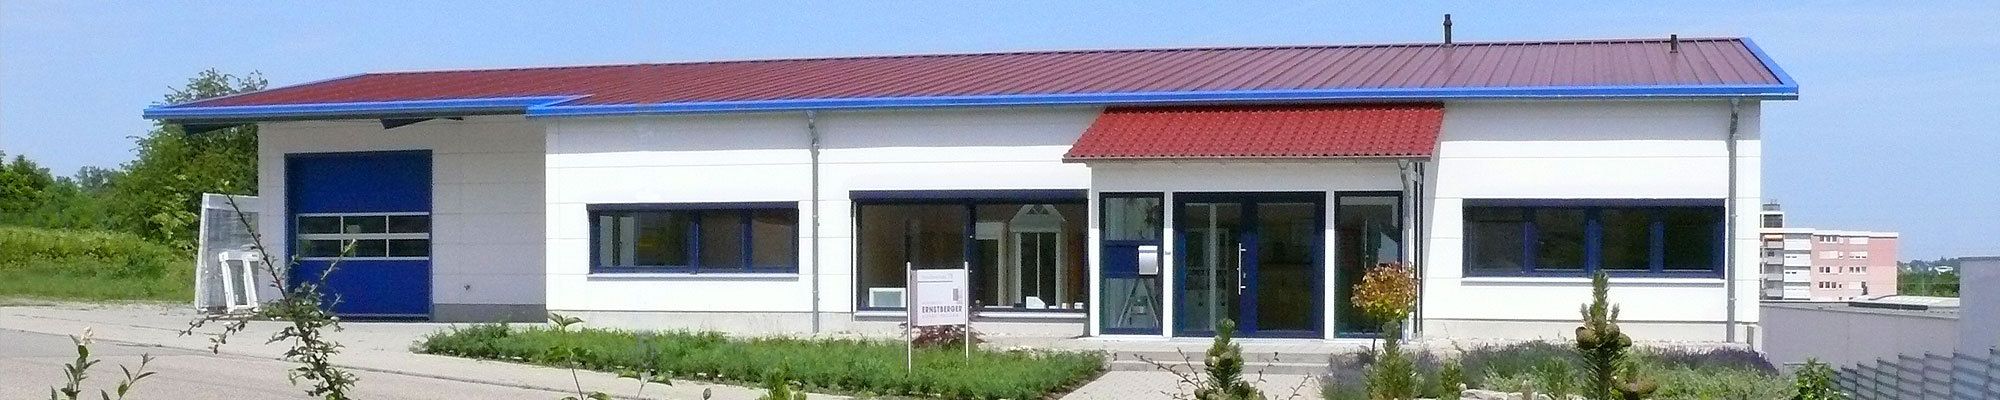 Firma - Ernstberger Glaserei, Fenster- & Rollladenbau